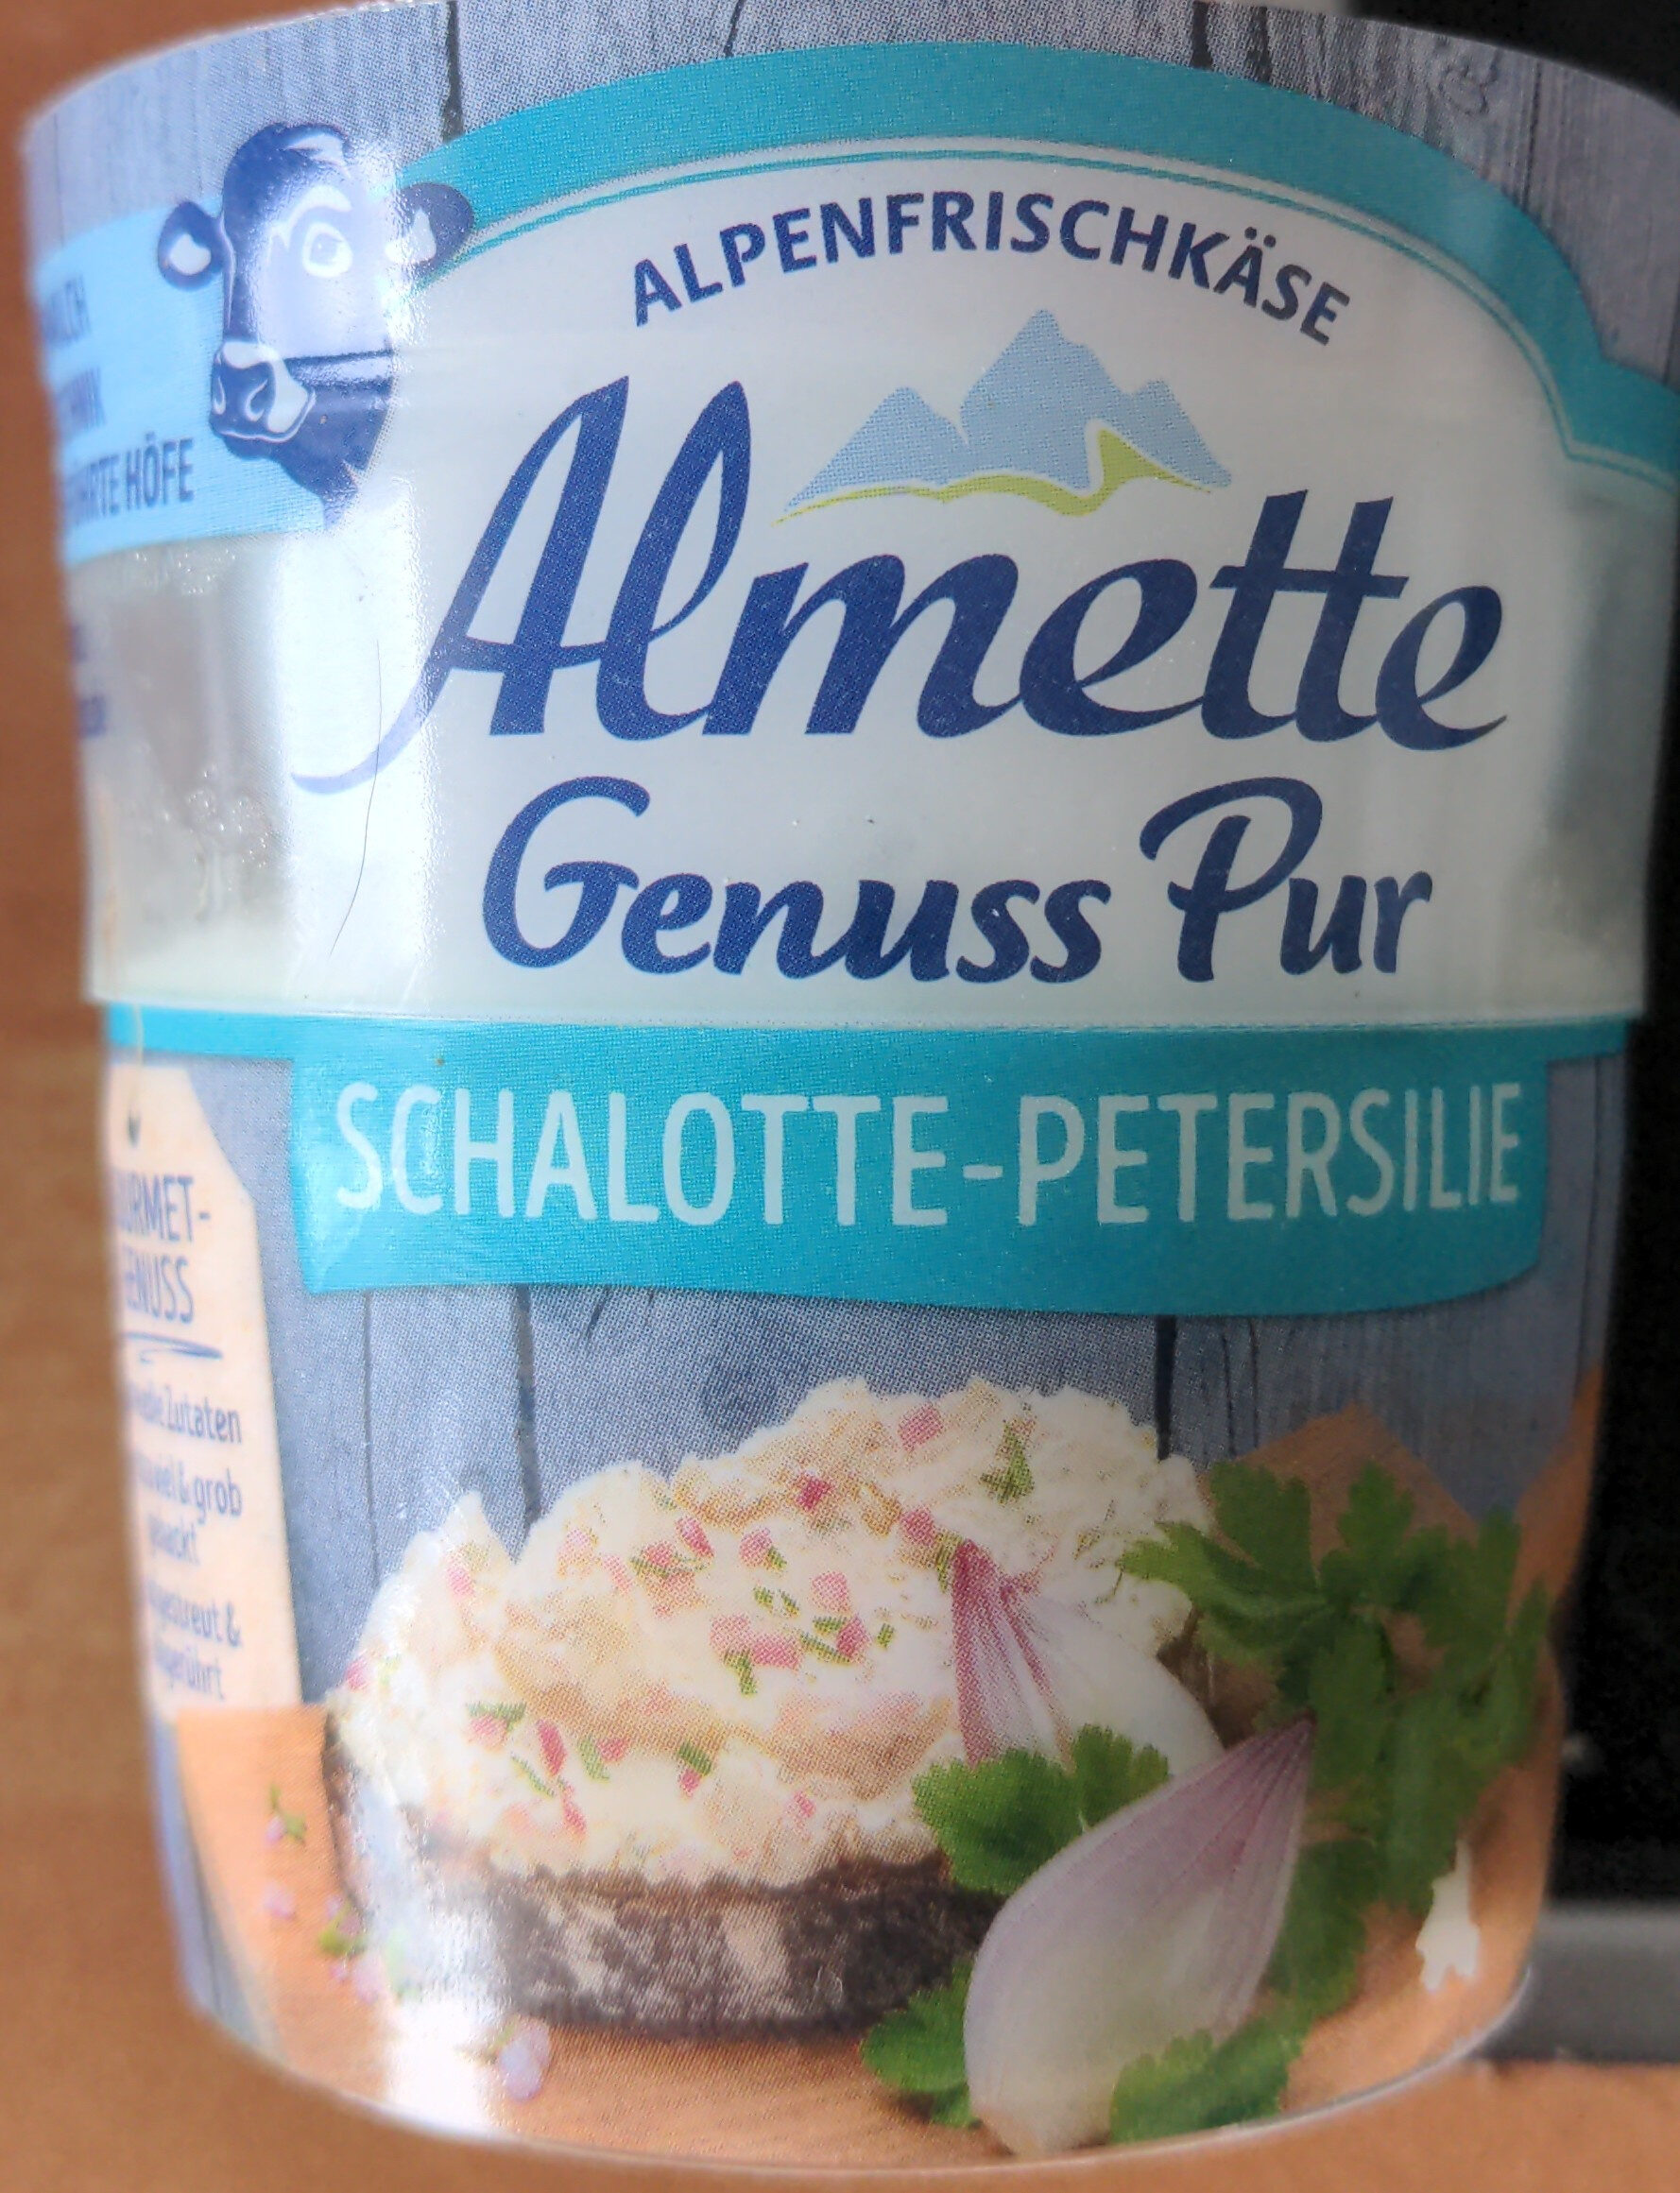 Almette Genuss Pur Schalotte-Petersilie - Product - de